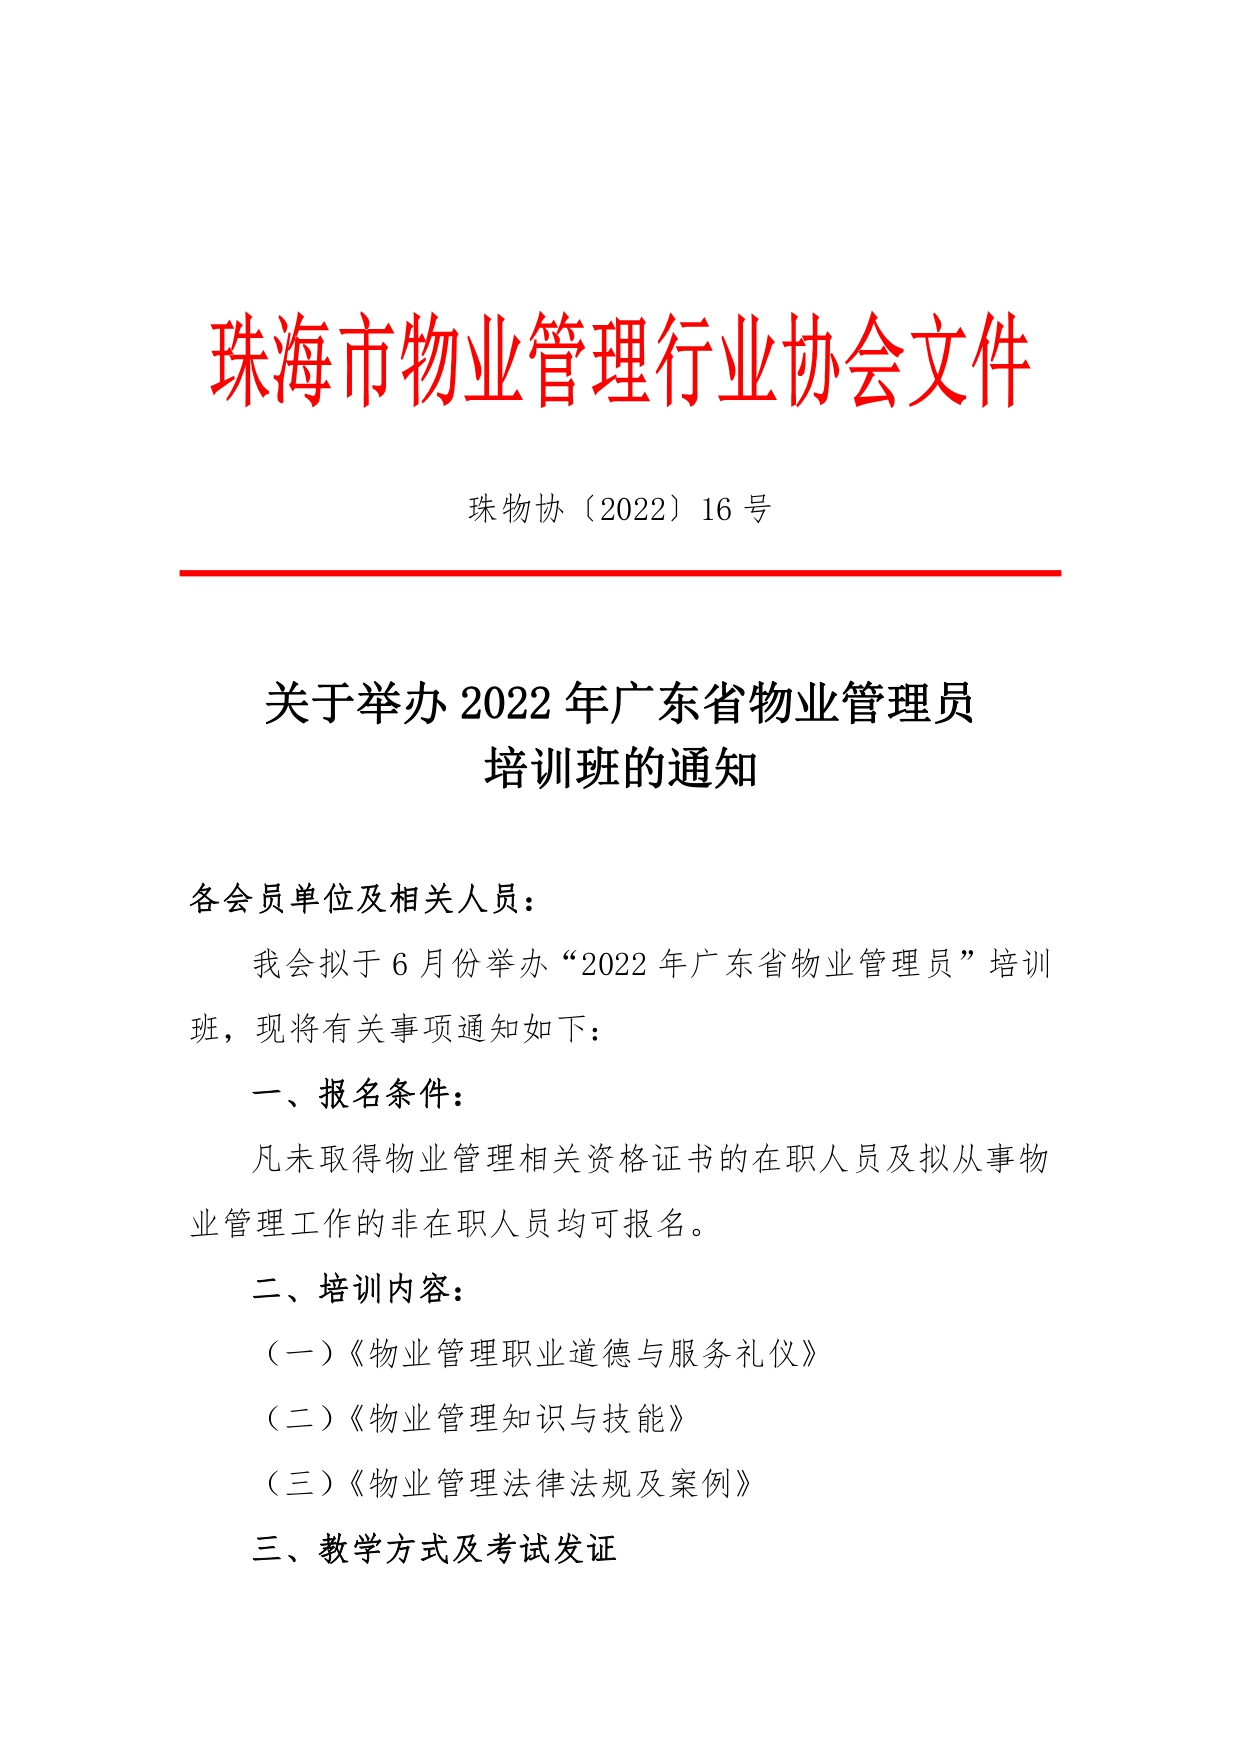 珠物协〔2022〕16号-关于举办2022年广东省物业管理员培训班的通知_page-0001.jpg